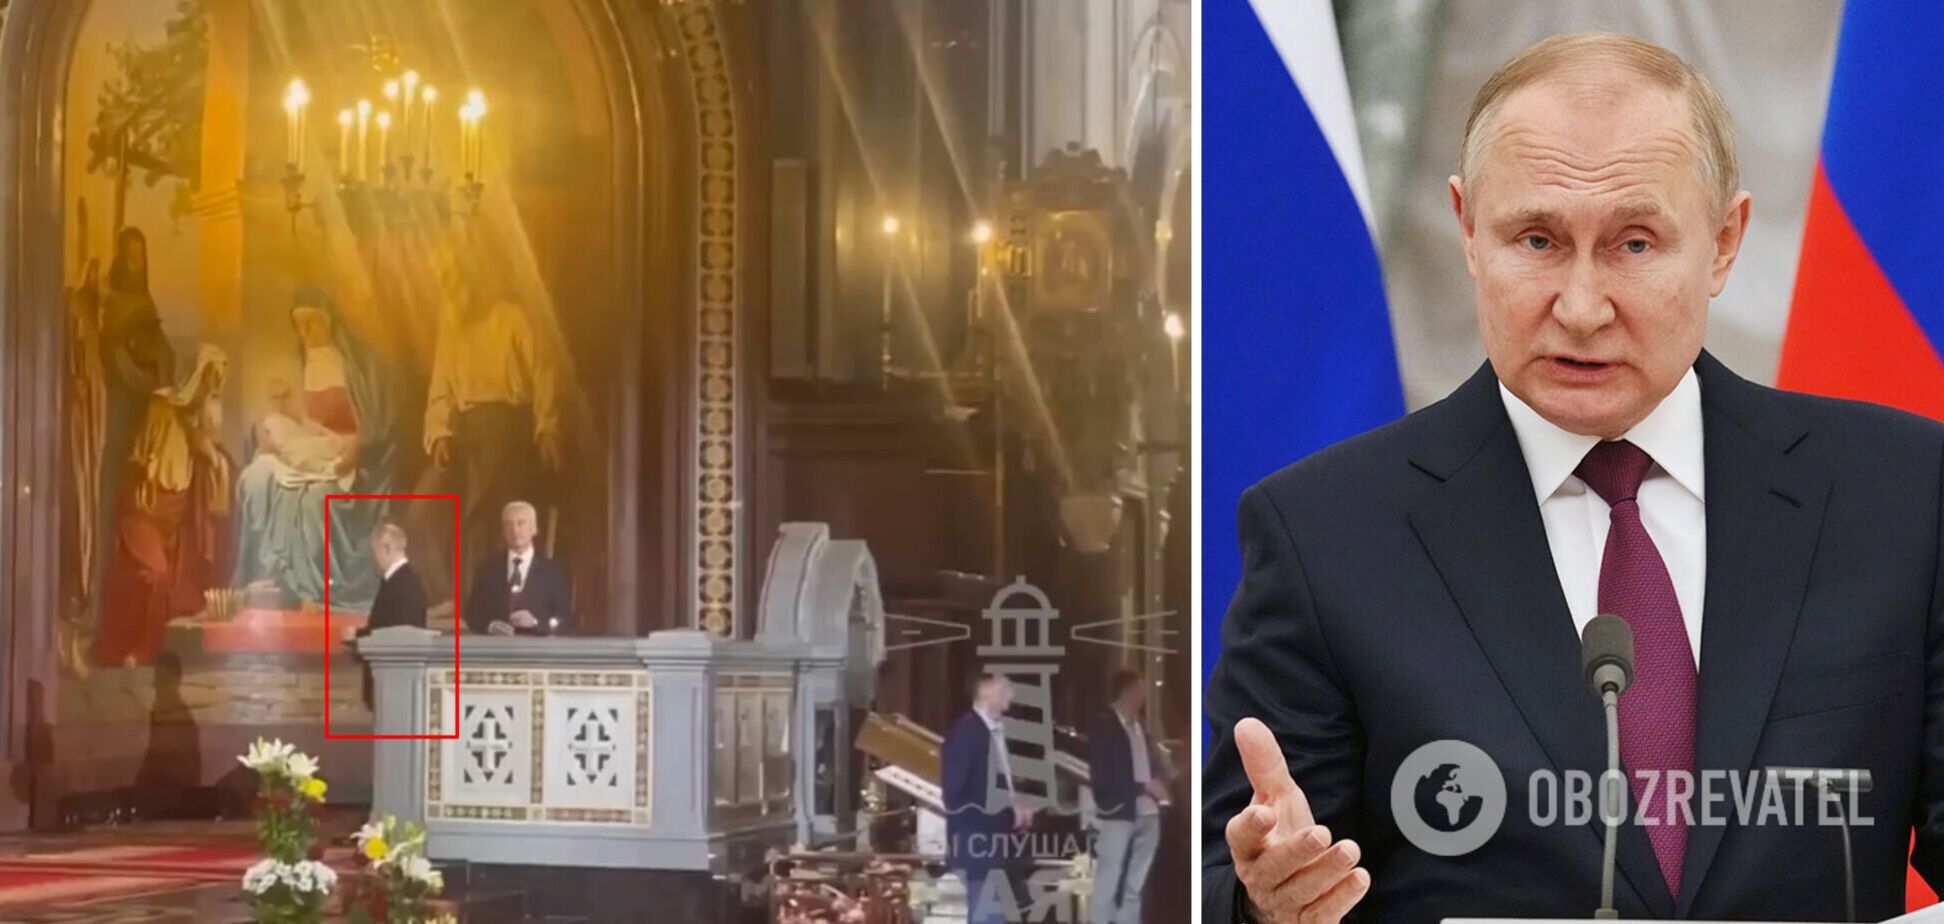 Путин посетил церковь РПЦ